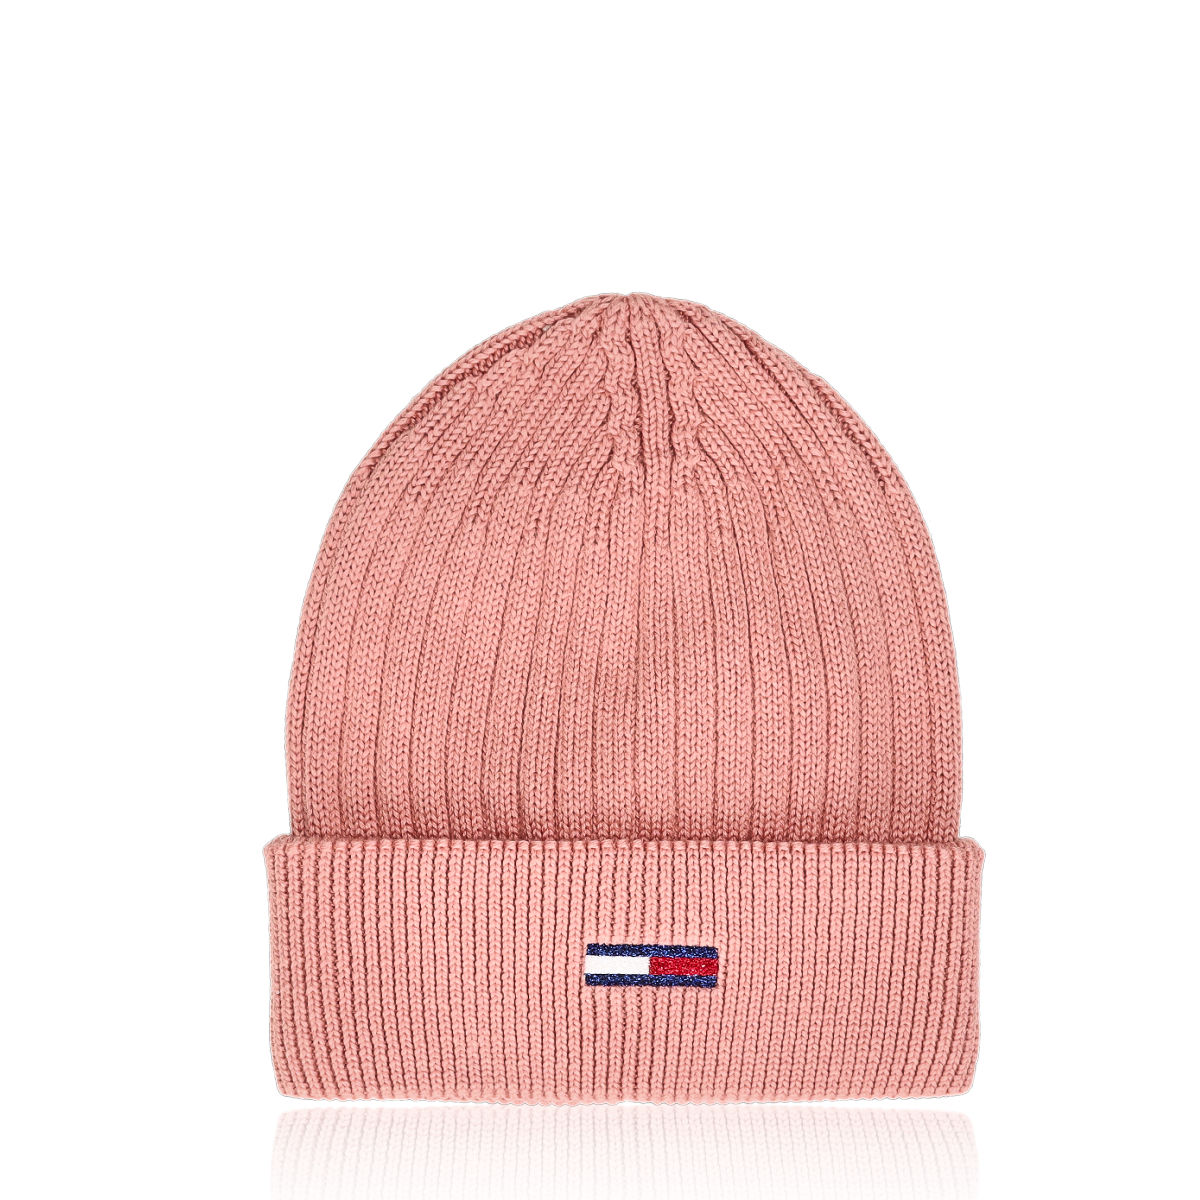 Hilfiger winter hat - pink | Robel.shoes